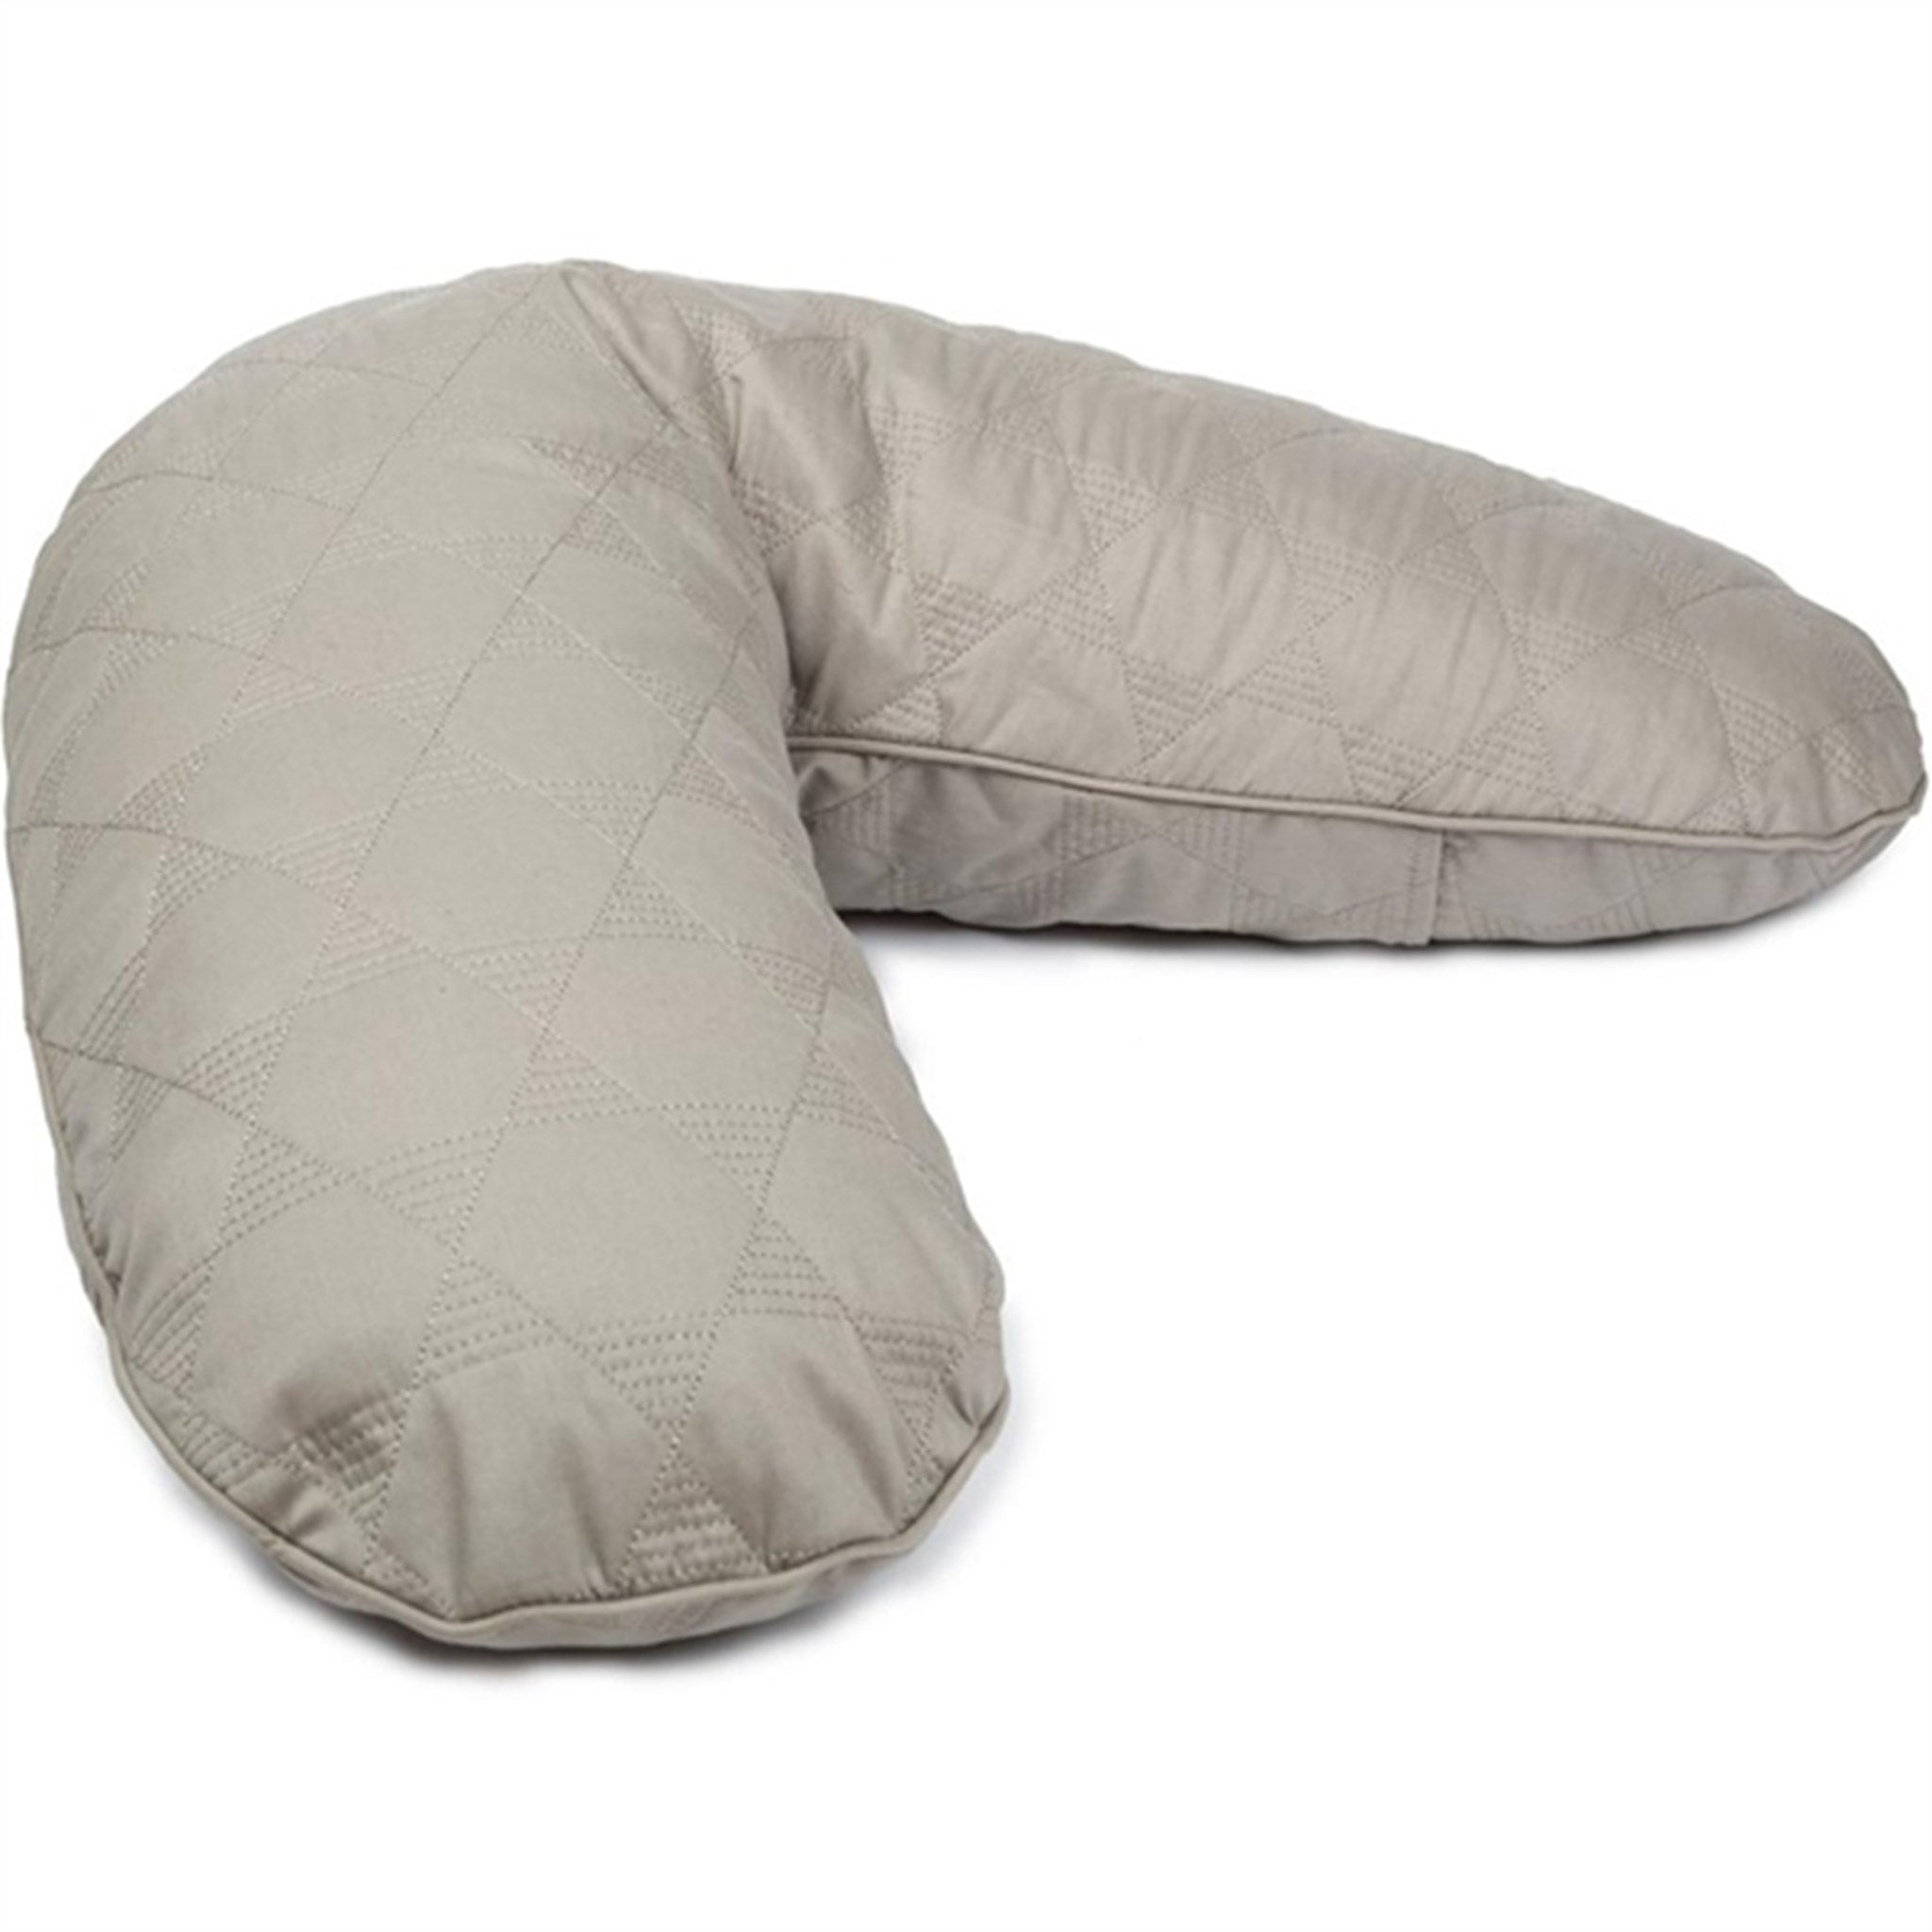 Smallstuff Quilted Nursing Pillow Sandy